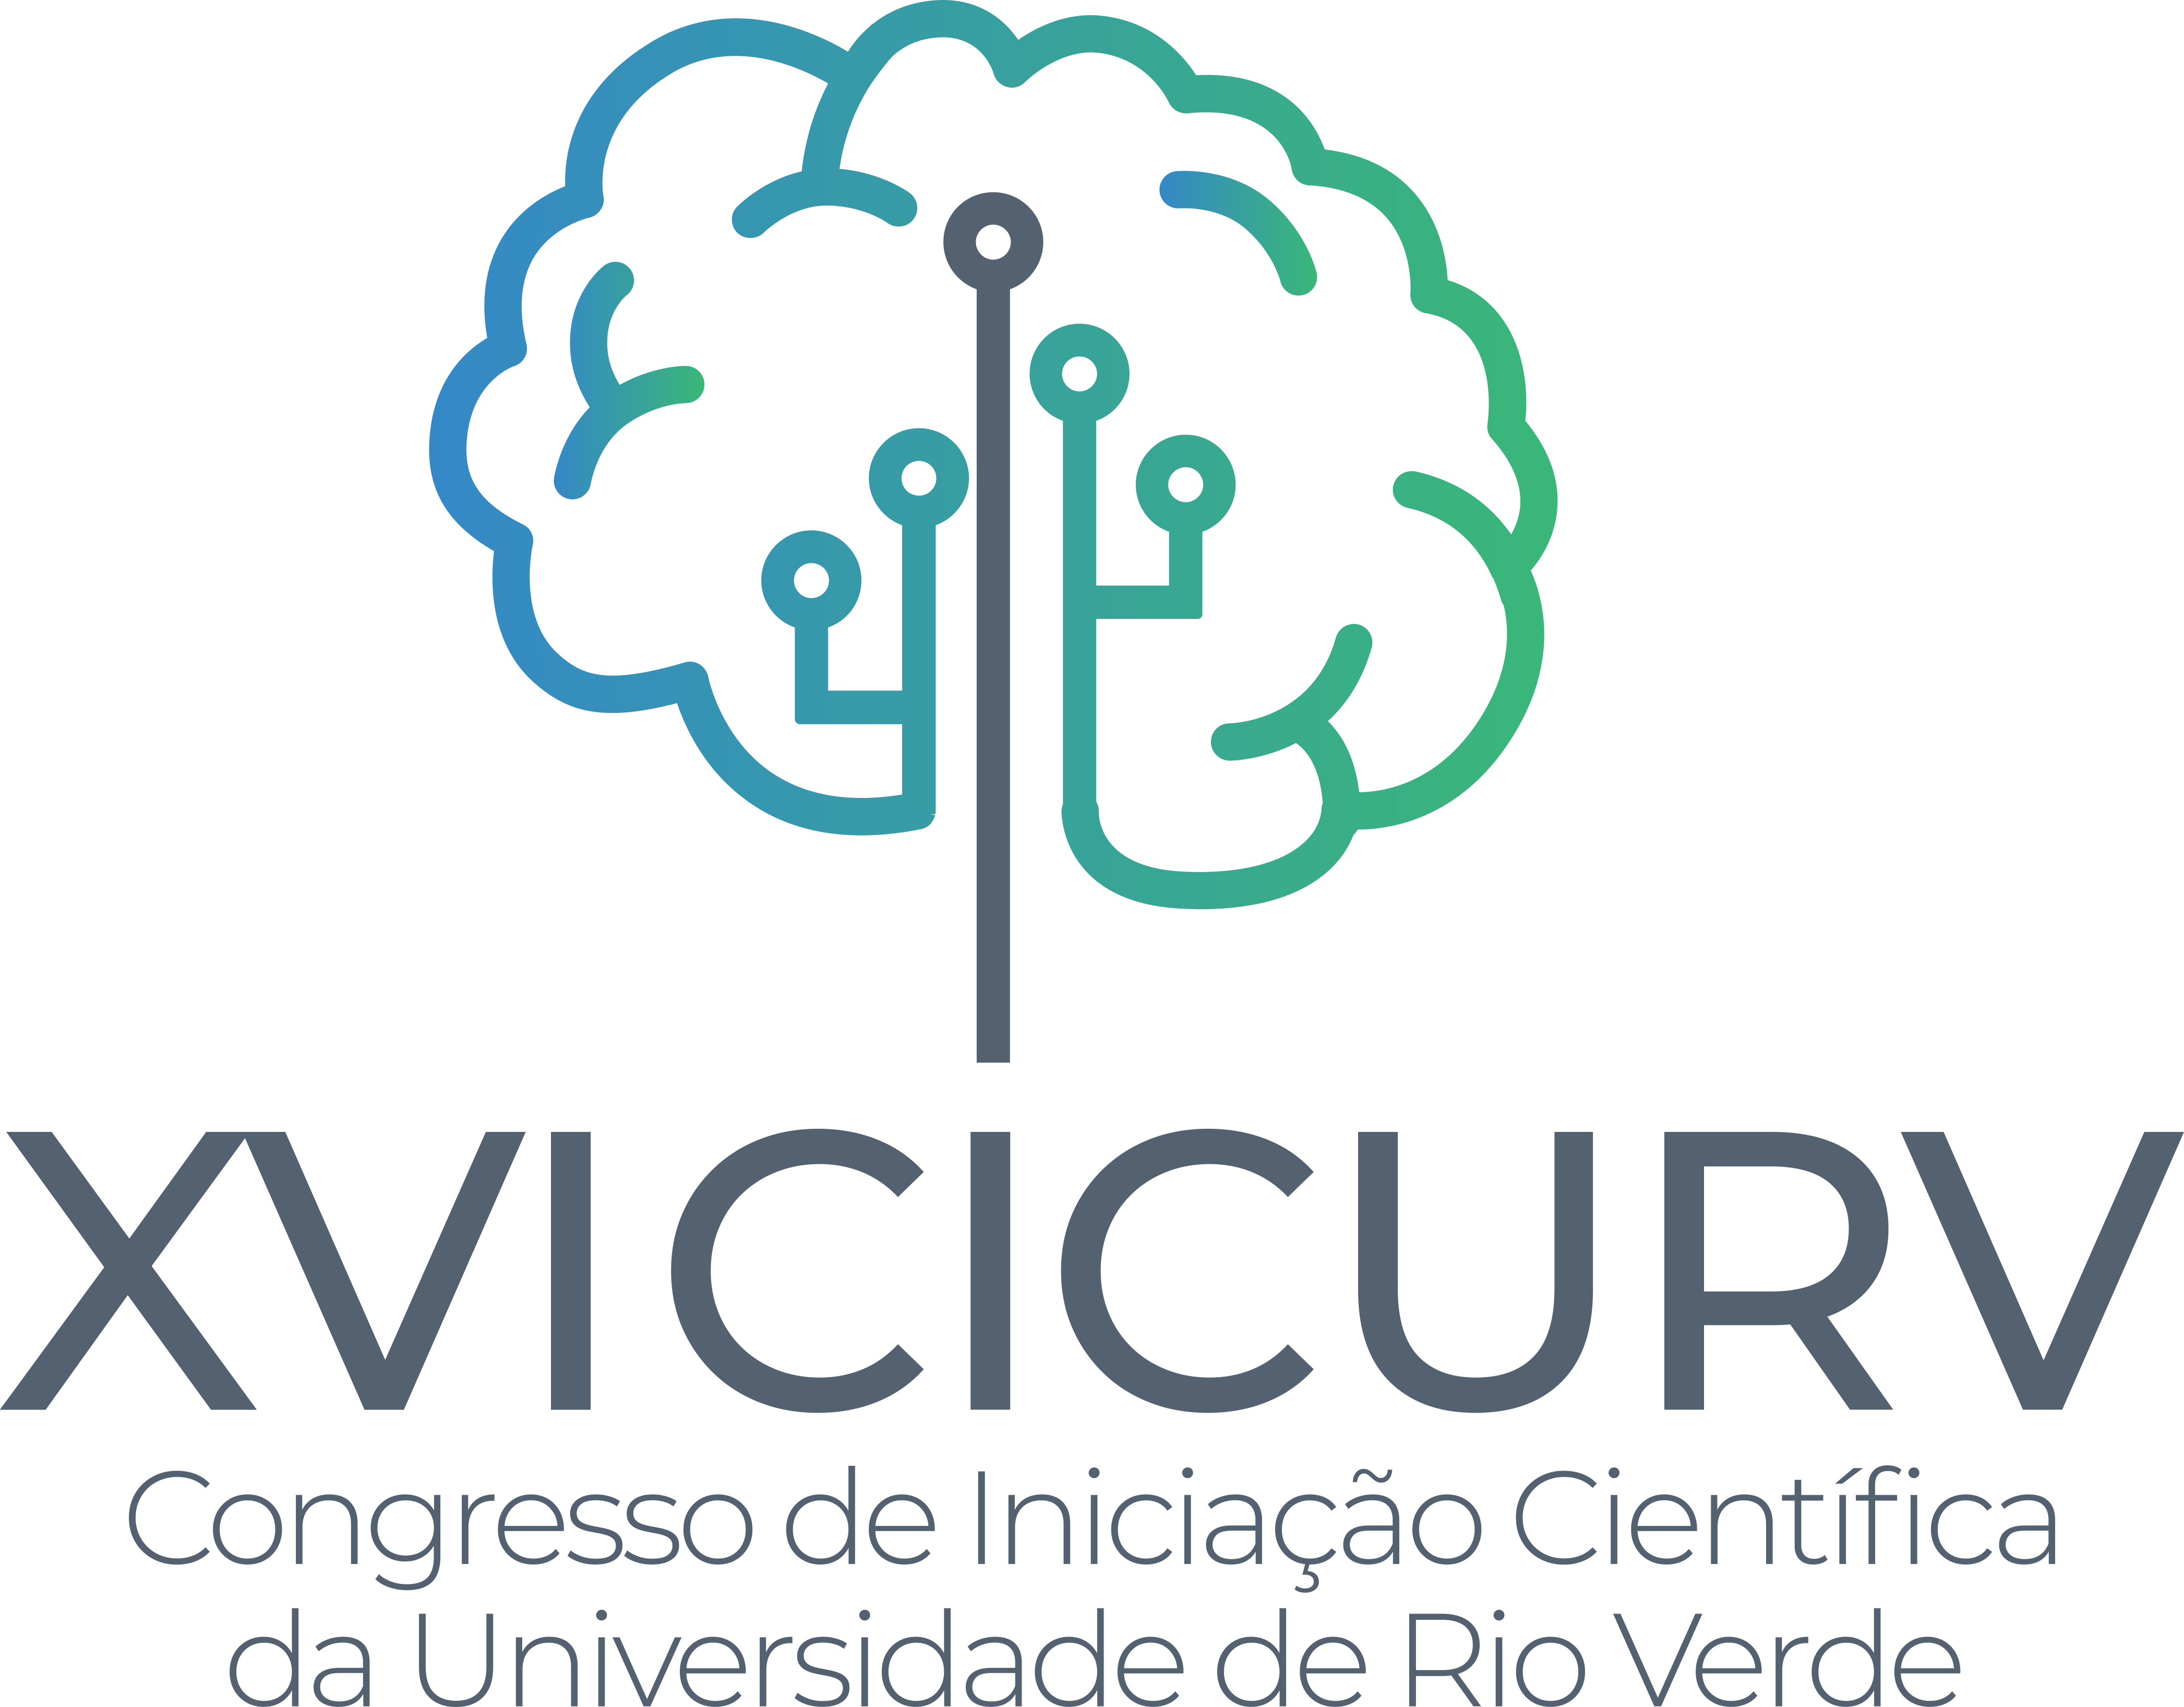 Congresso de Iniciação Científica da Universidade de Rio Verde